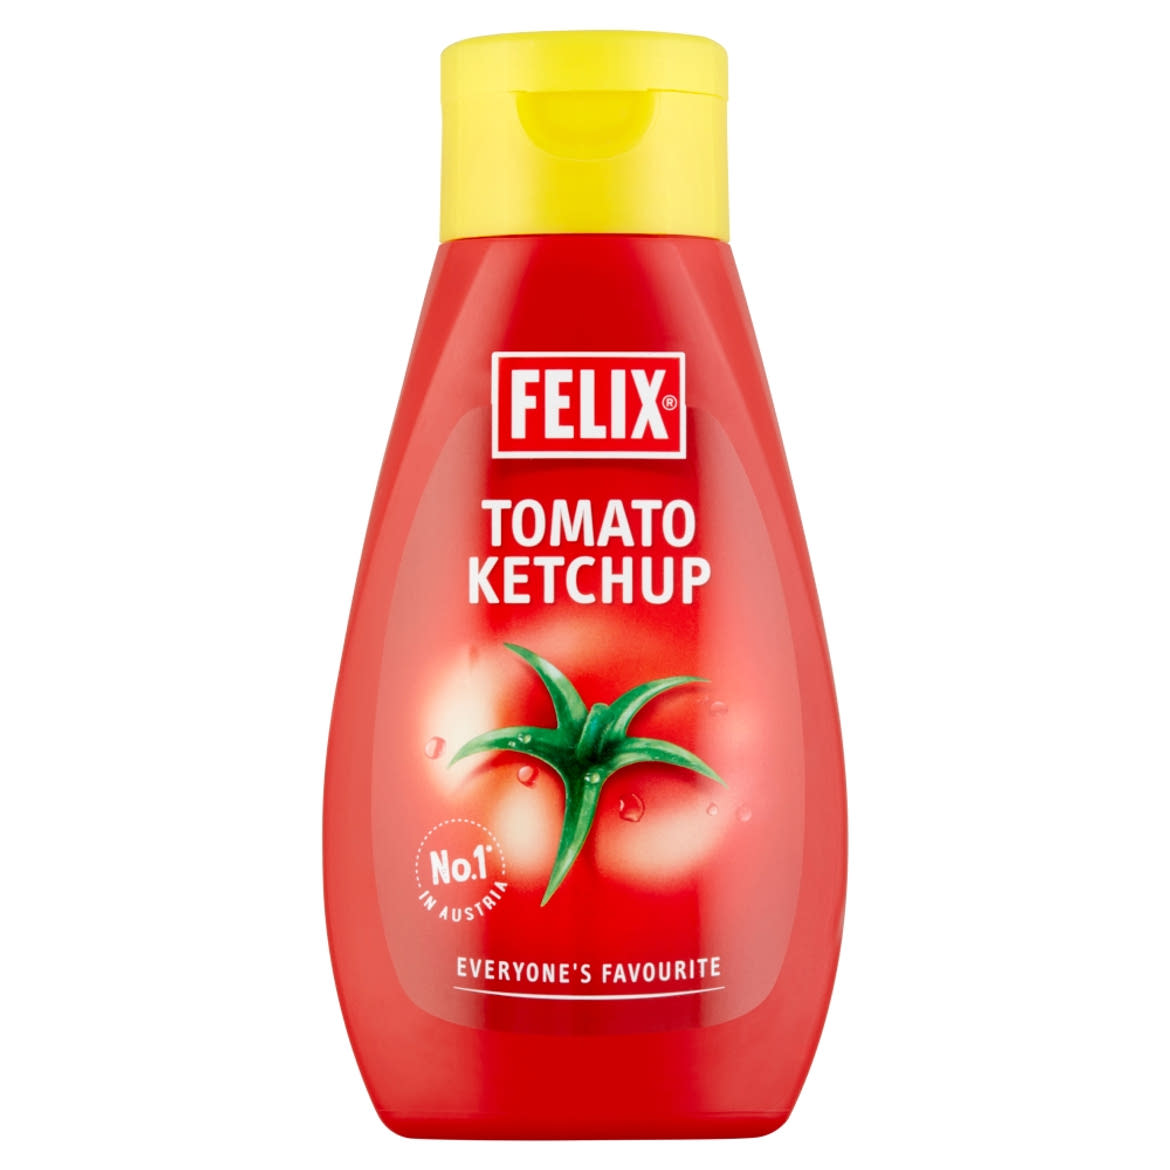 Felix csemege ketchup